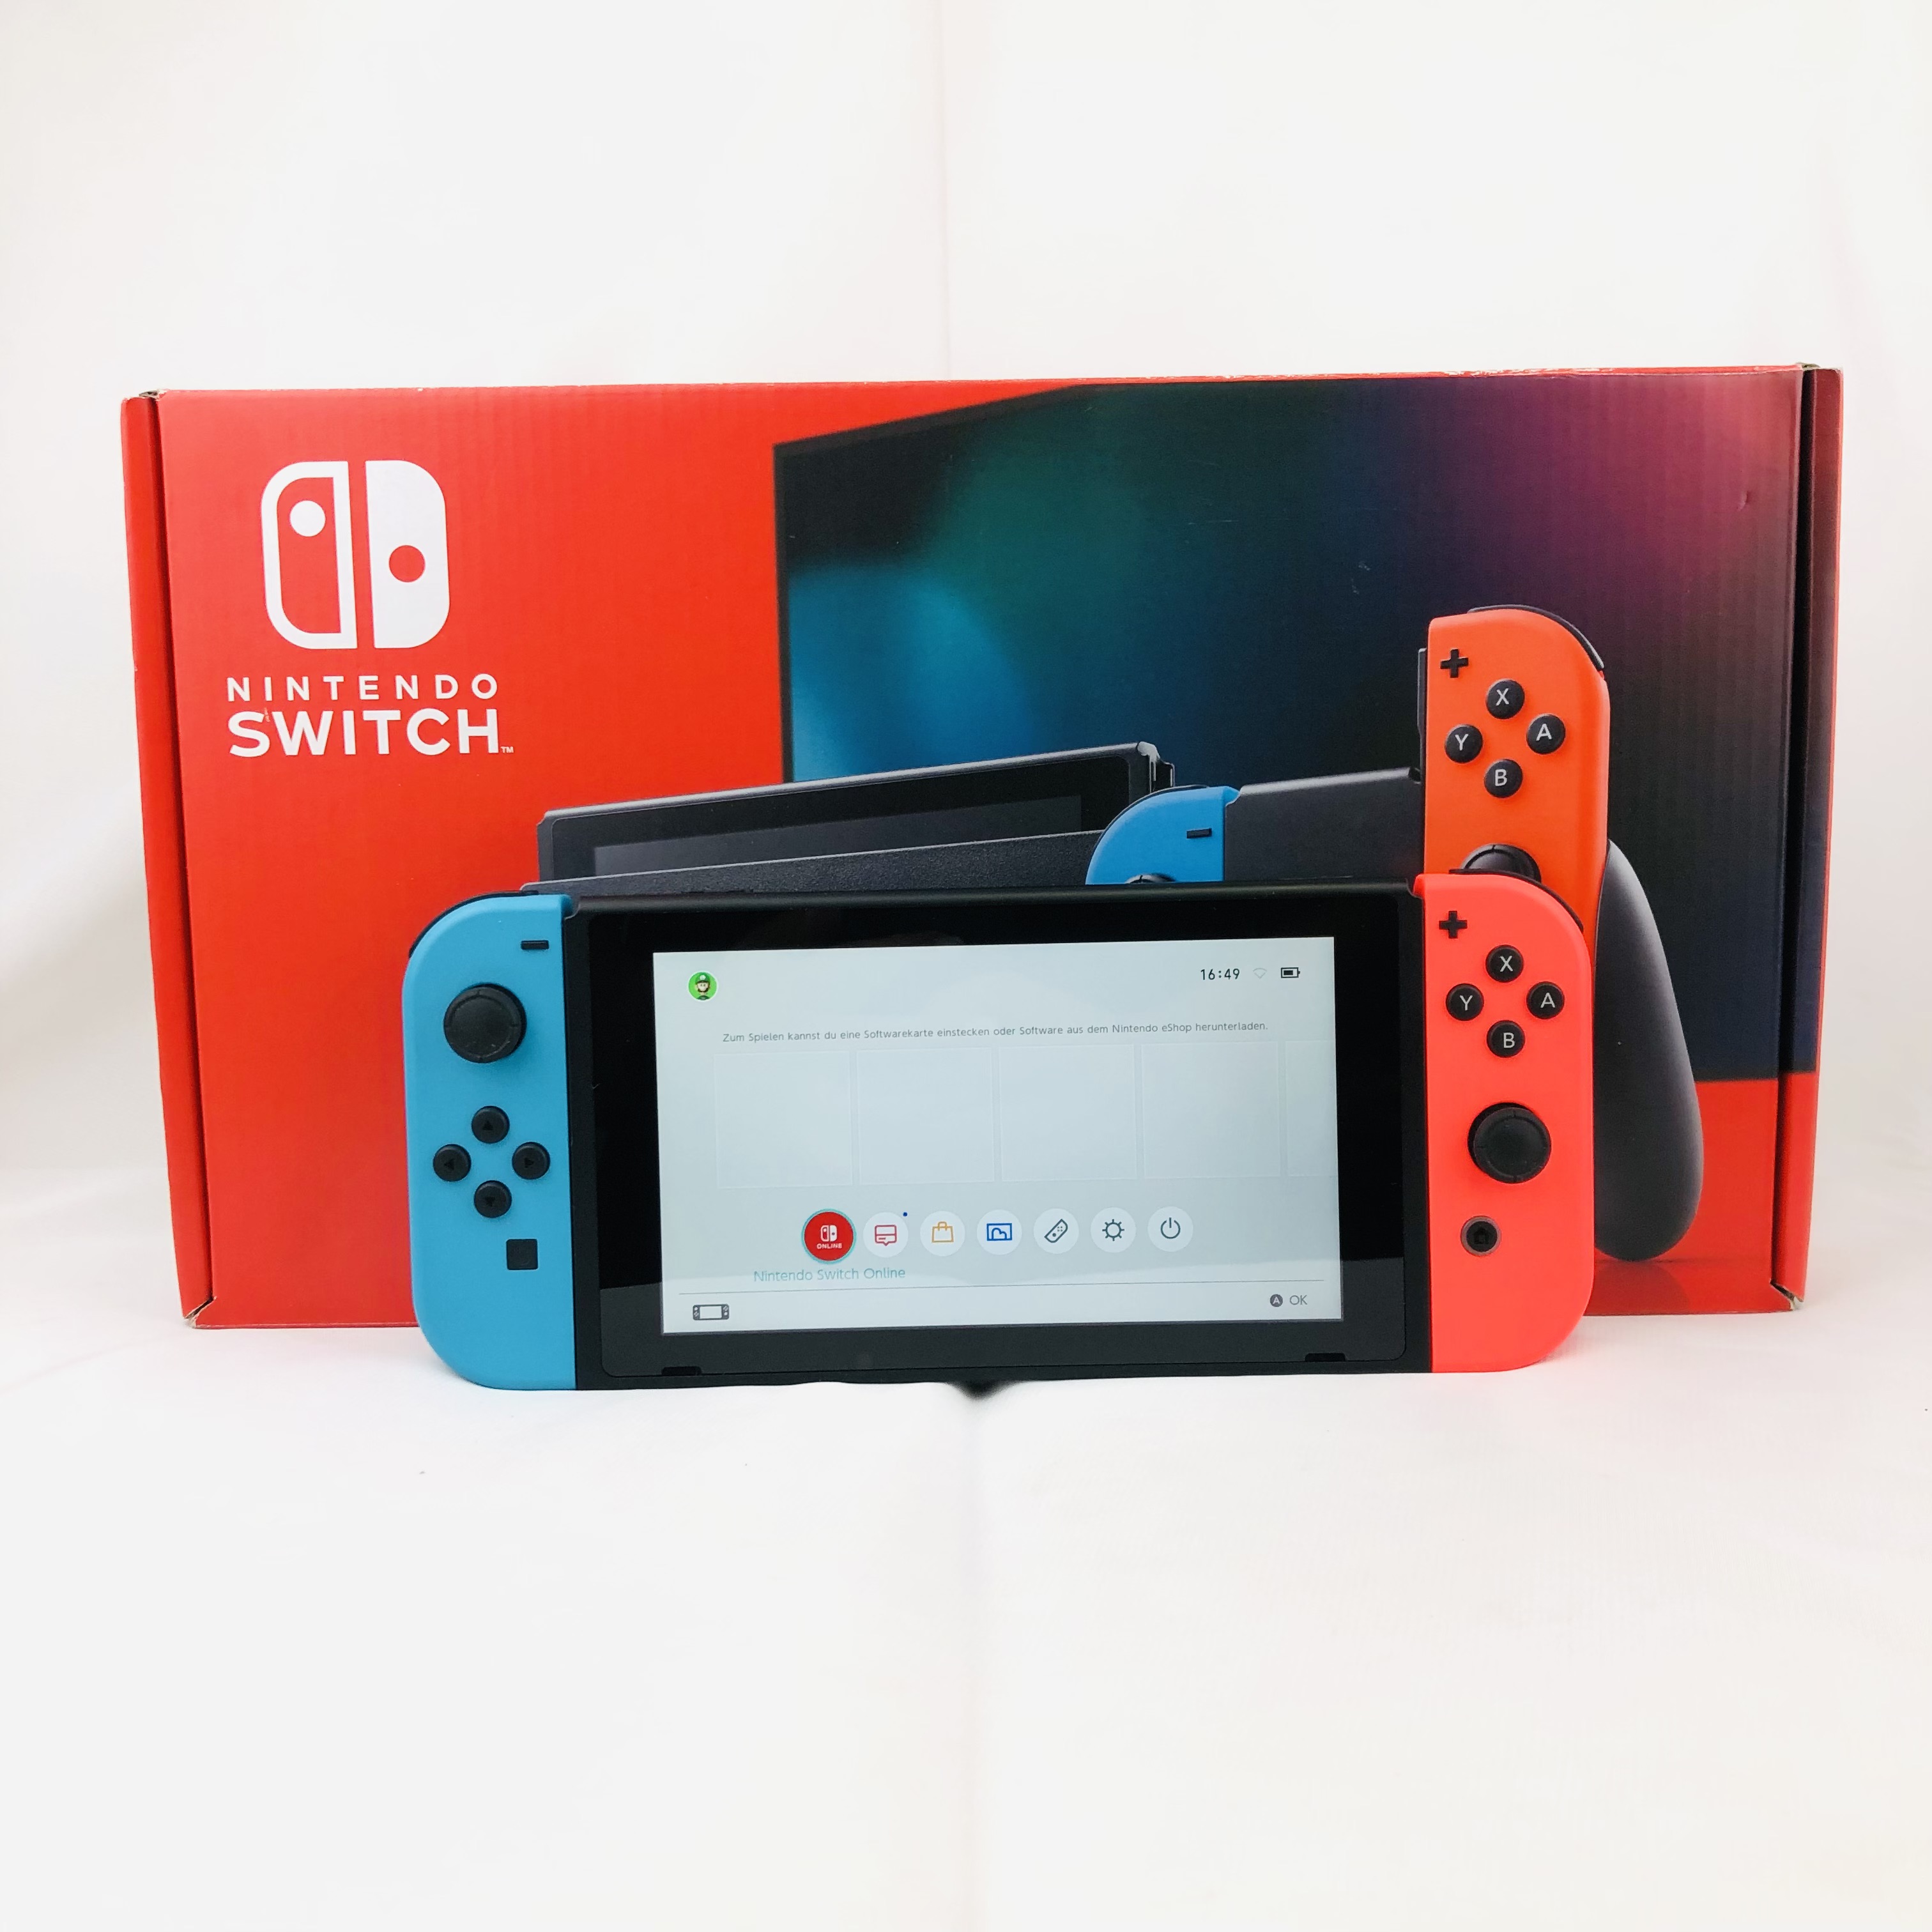 Nintendo Switch Konsole, blau-rot, *NEUWERTIG*